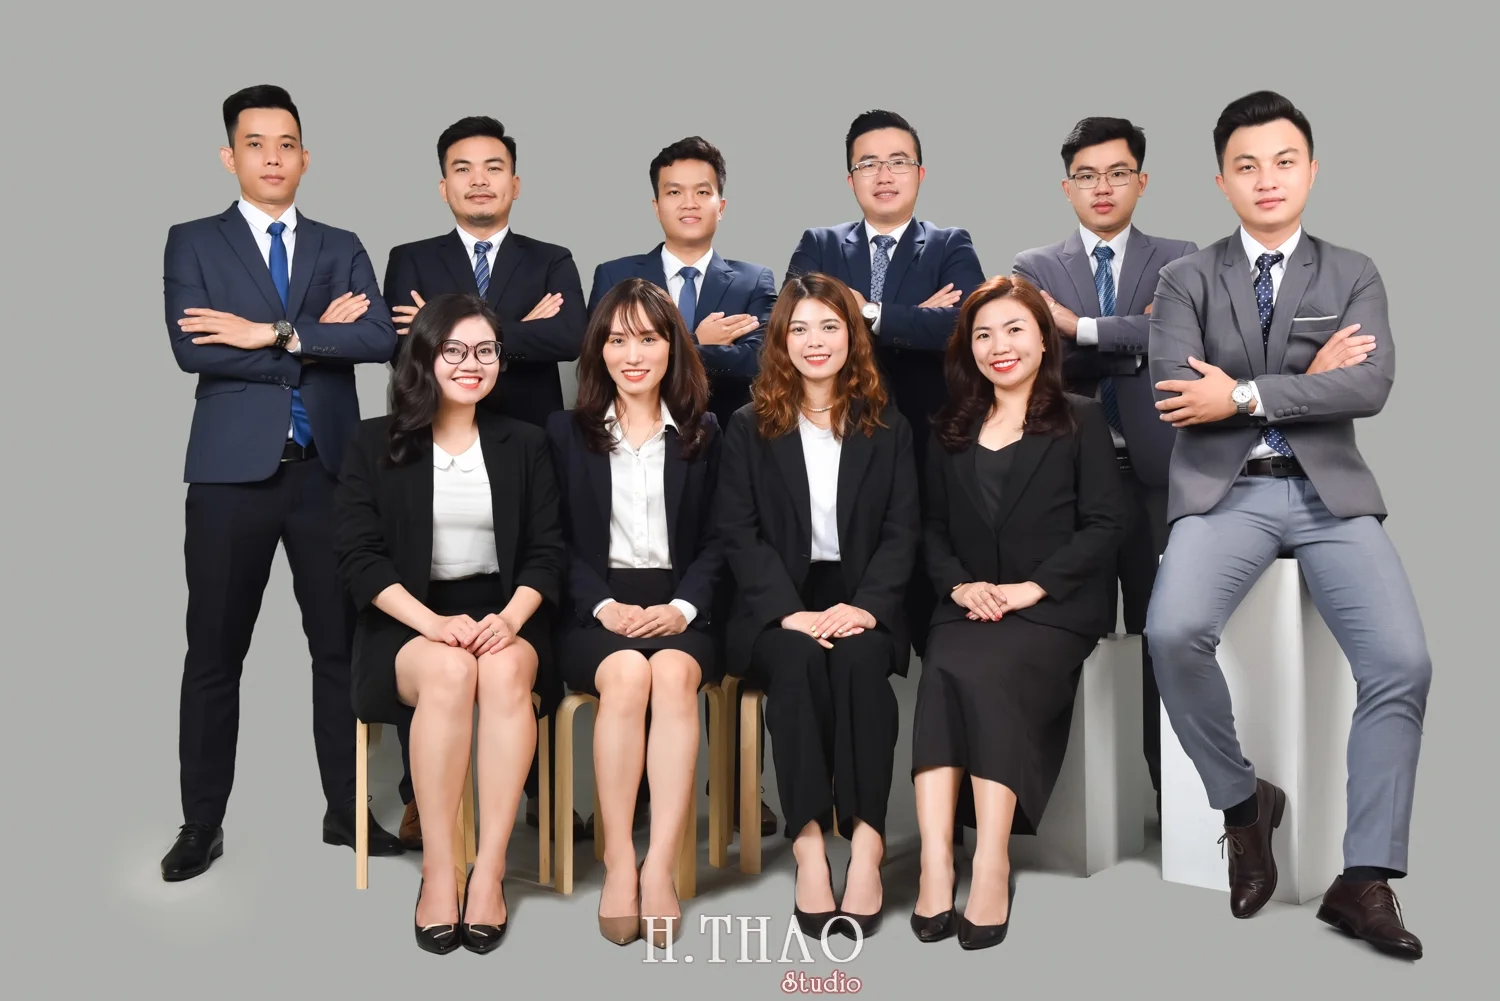 Anh profile cong ty 16 - Chụp ảnh profile cho đội nhóm sale ngân hàng - HThao Studio